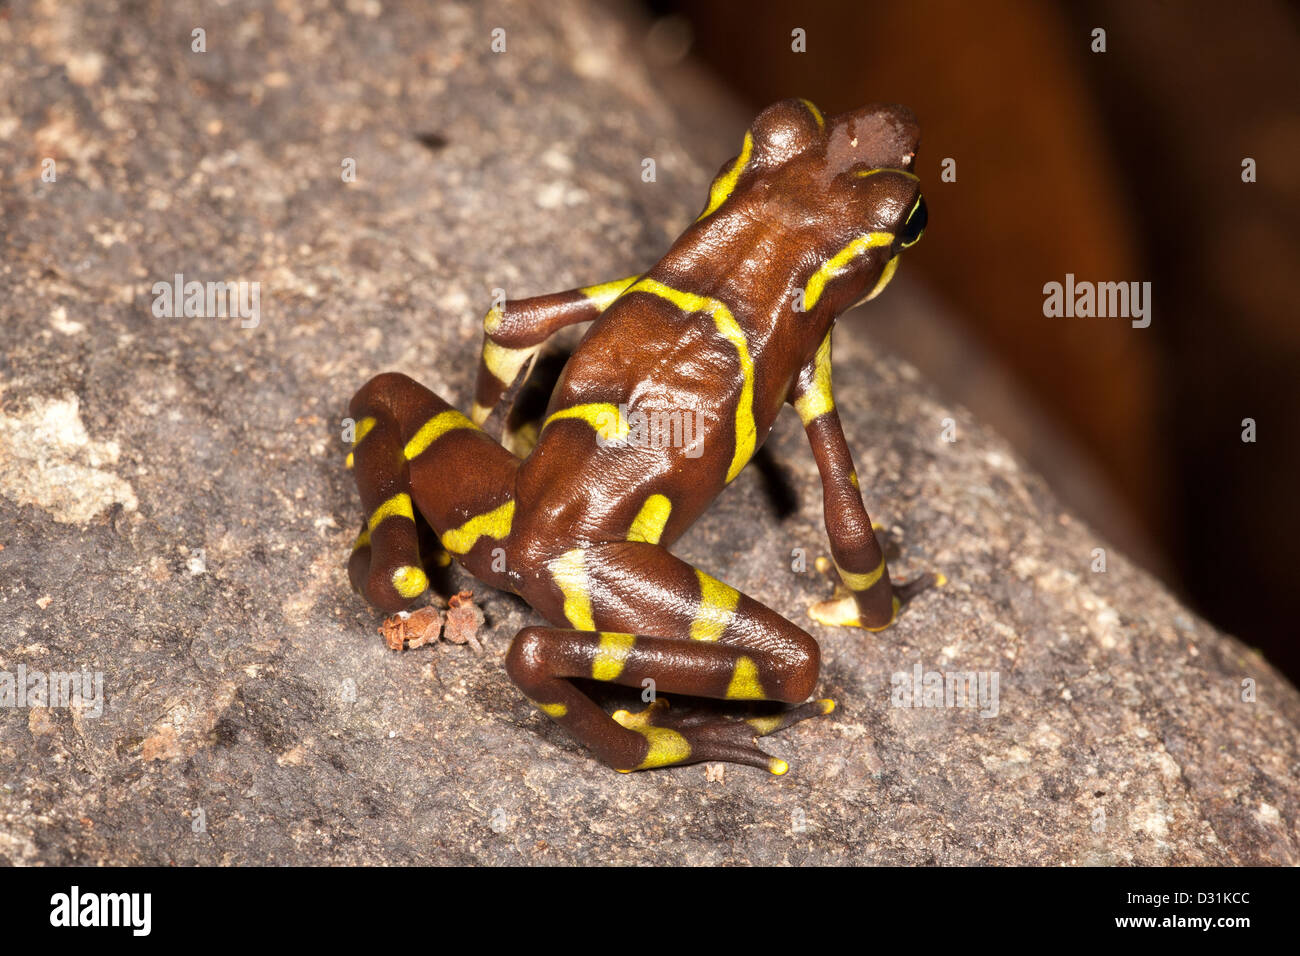 La disparition de la grenouille Arlequin, Atelopus limosus, dans la province de Panama, République du Panama. Banque D'Images